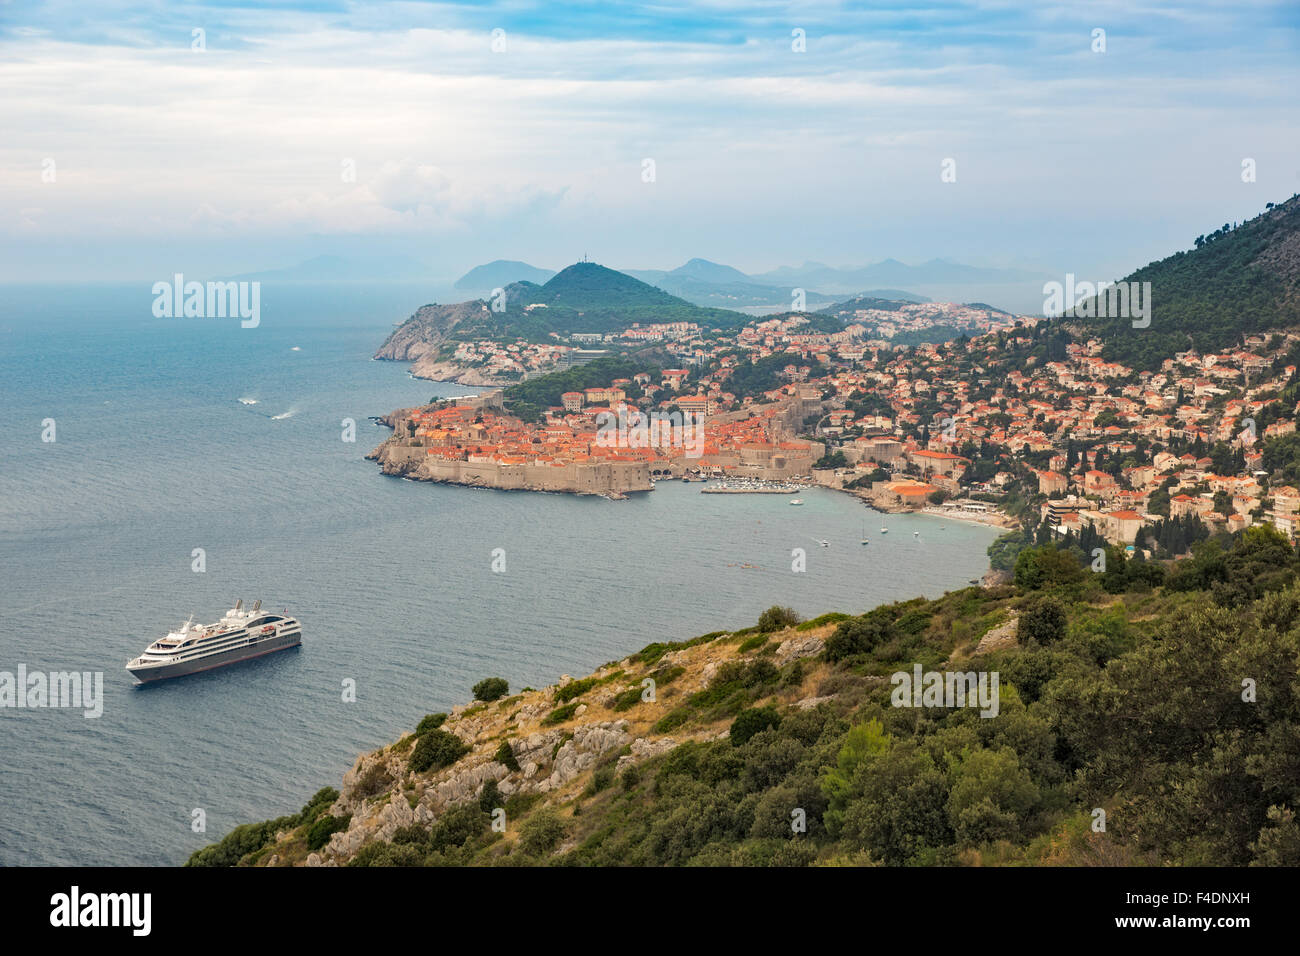 La histórica ciudad de Dubrovnik, en el Mar Adriático, Croacia Foto de stock